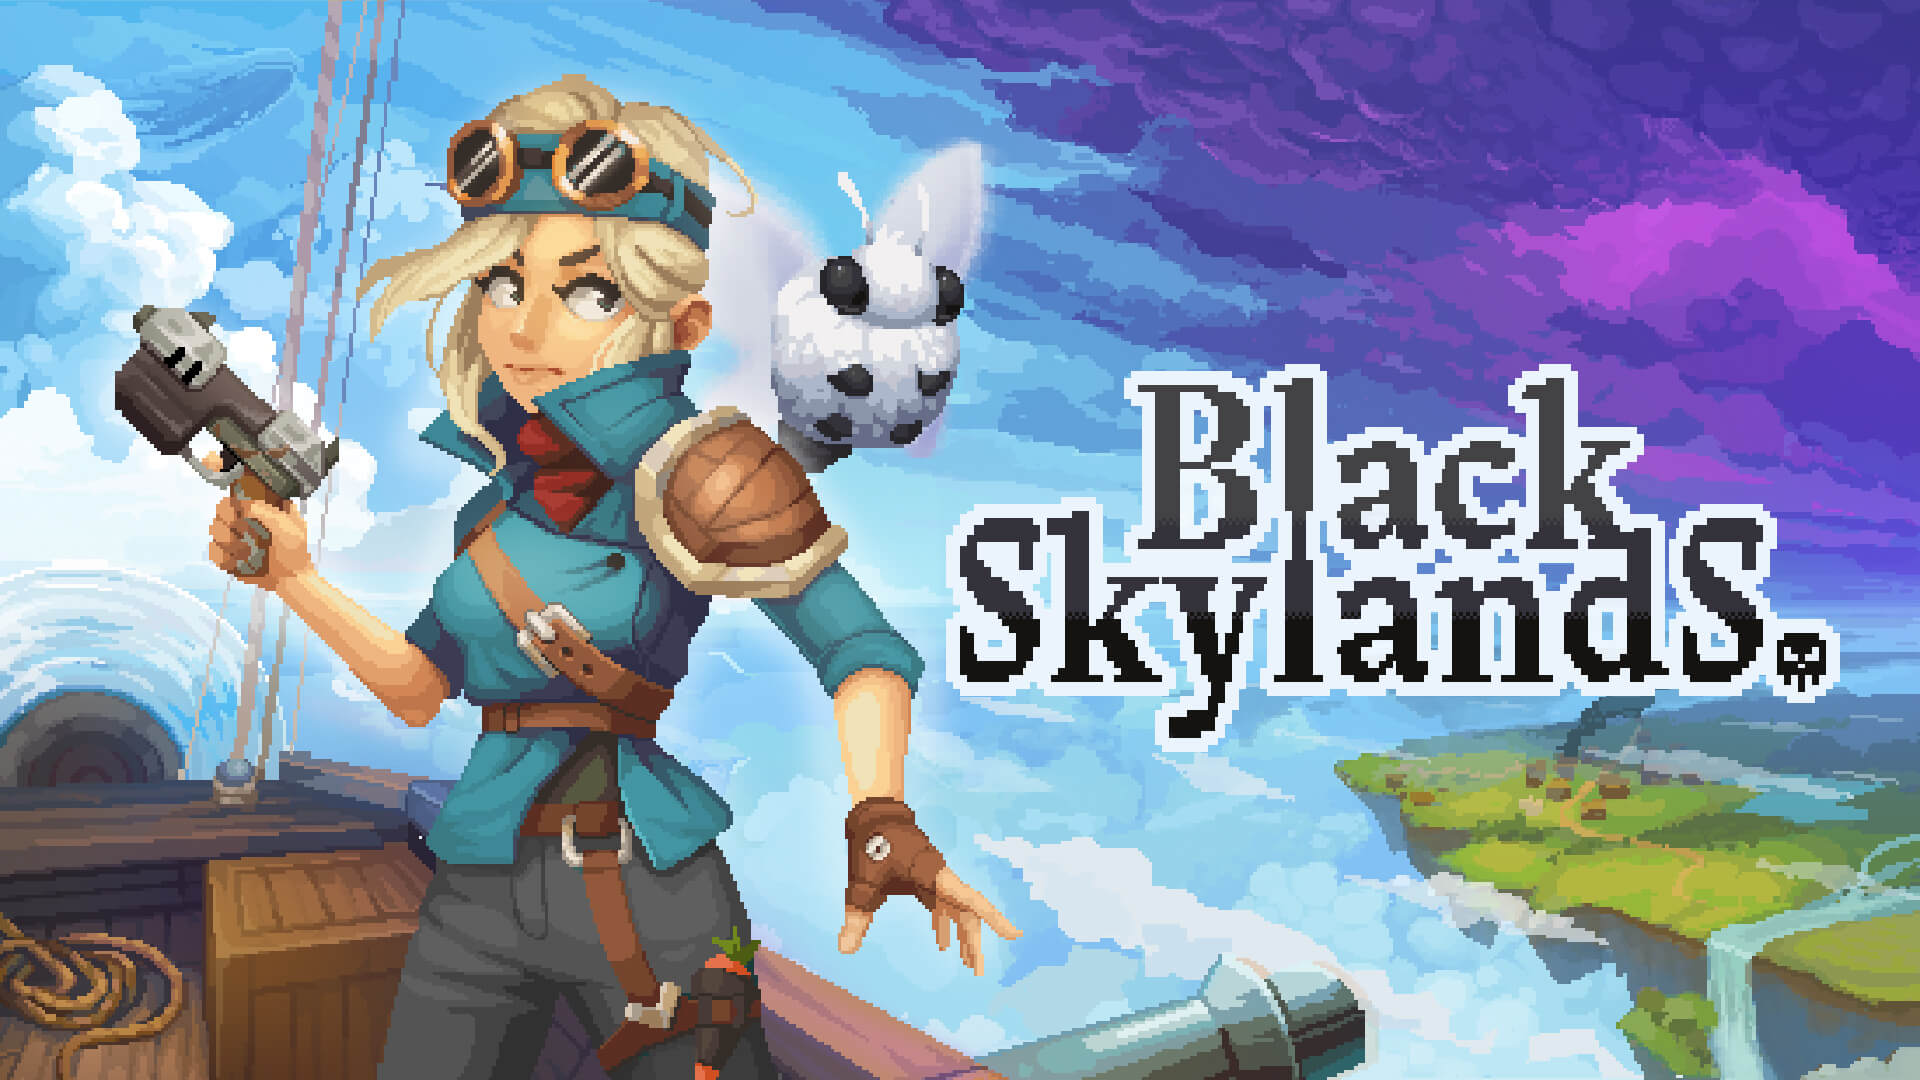 Black skylands (Погляделки)